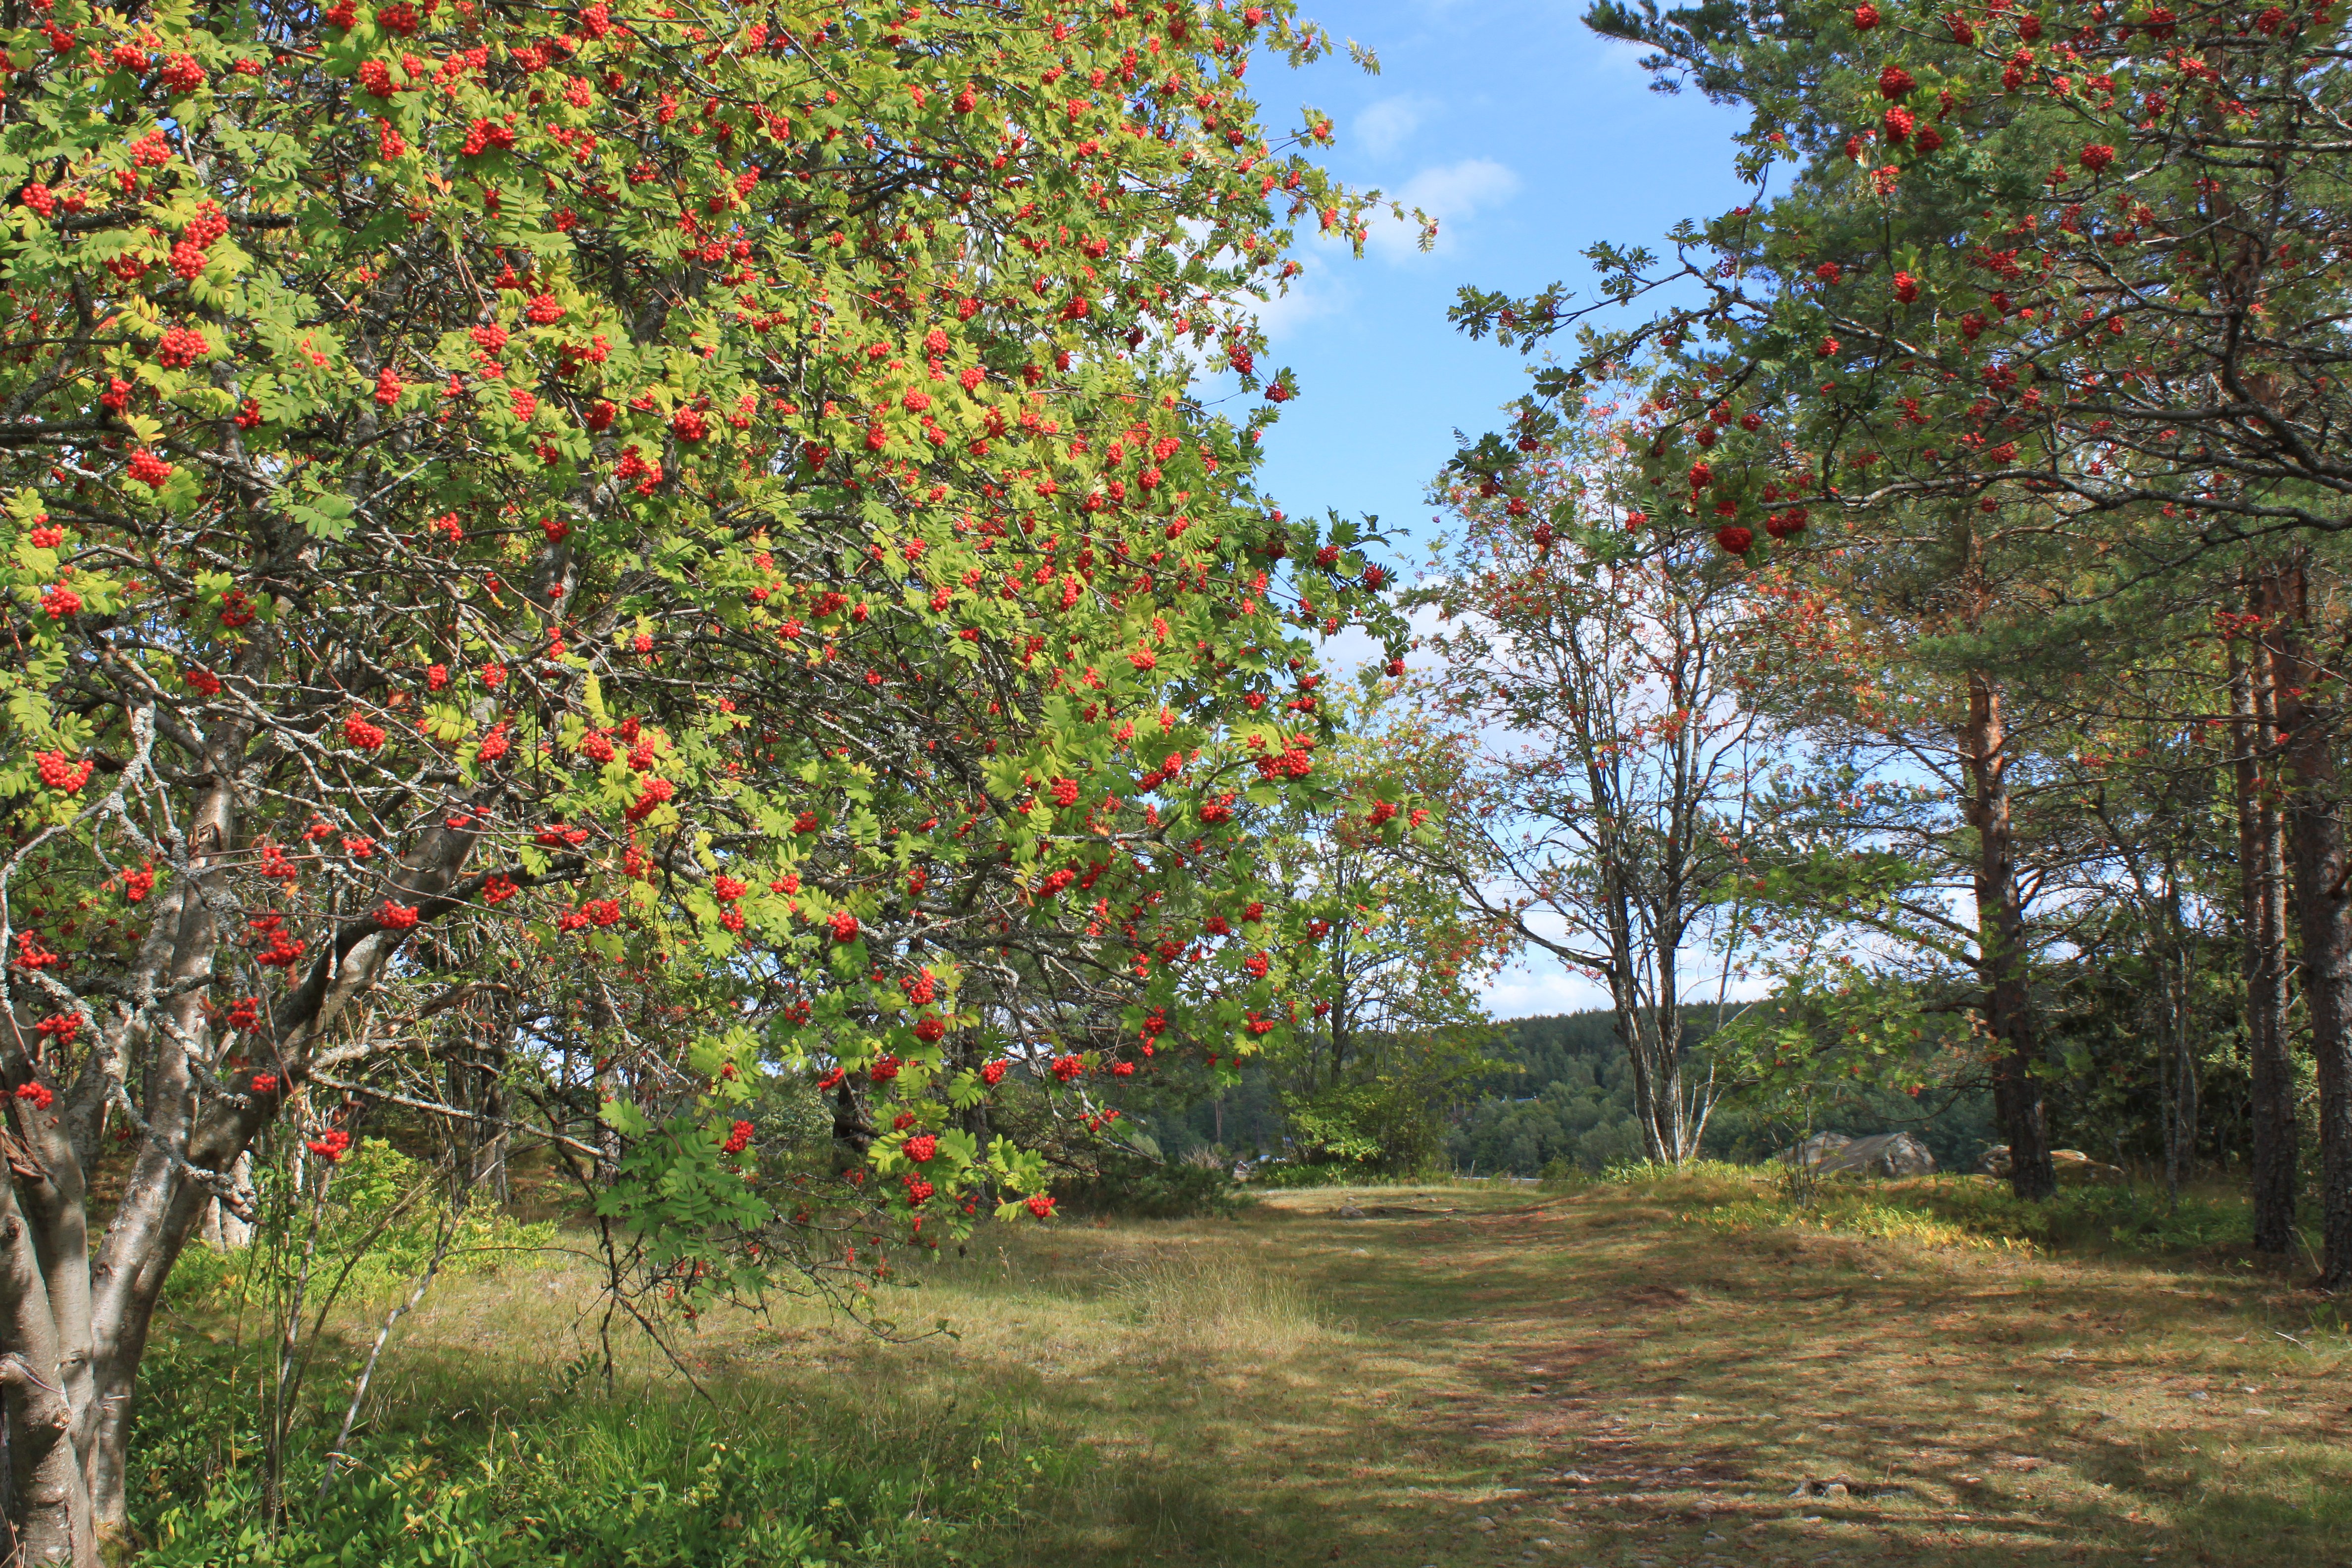 En stig av gräs och jord går genom ett naturområde med många rönnträd runtom. Det är gott om röda rönnbär på träden.